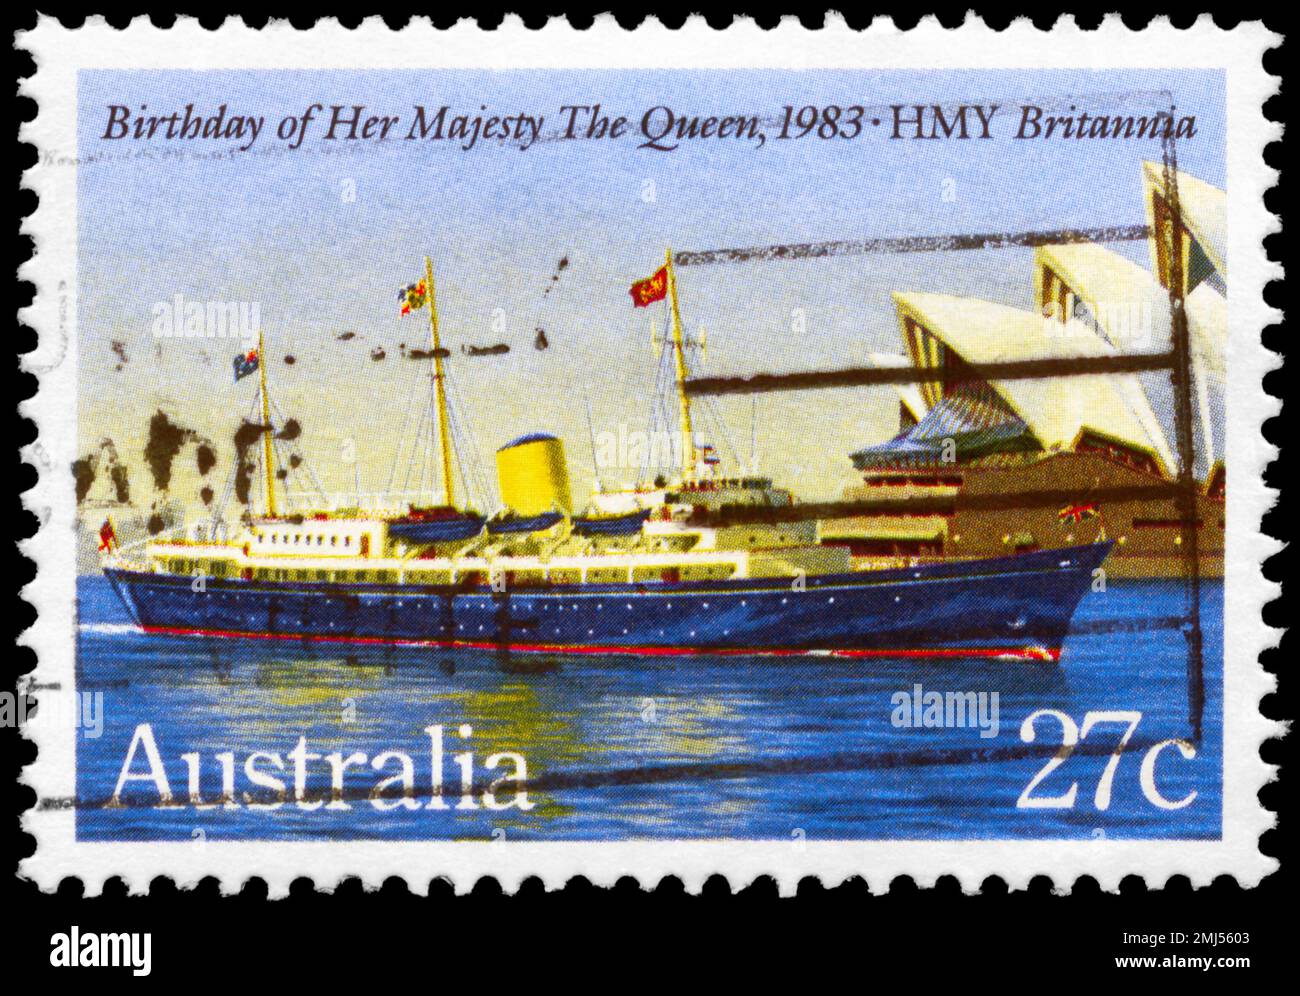 AUSTRALIEN - CIRCA 1983: Ein in AUSTRALIEN gedruckter Stempel zeigt die HMY Britannia, die Königin Elizabeth II. Gewidmet ist, 57. Geburtstag, circa 1983 Stockfoto